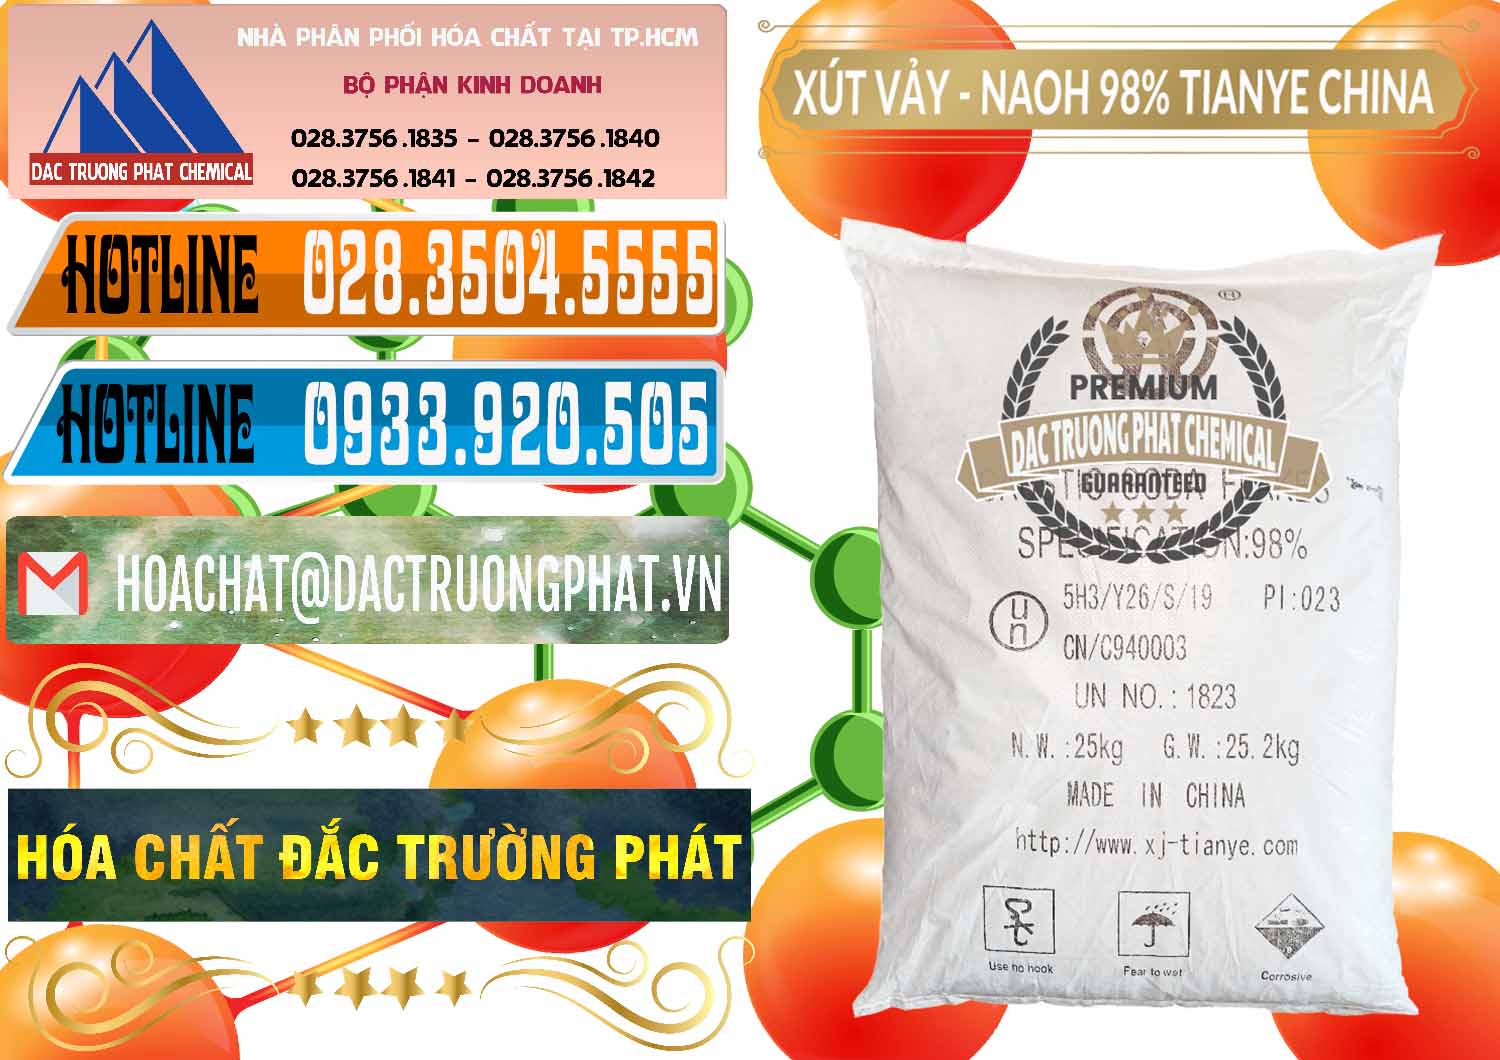 Công ty bán _ cung ứng Xút Vảy - NaOH Vảy 98% Tianye Trung Quốc China - 0177 - Cty nhập khẩu - cung cấp hóa chất tại TP.HCM - stmp.net